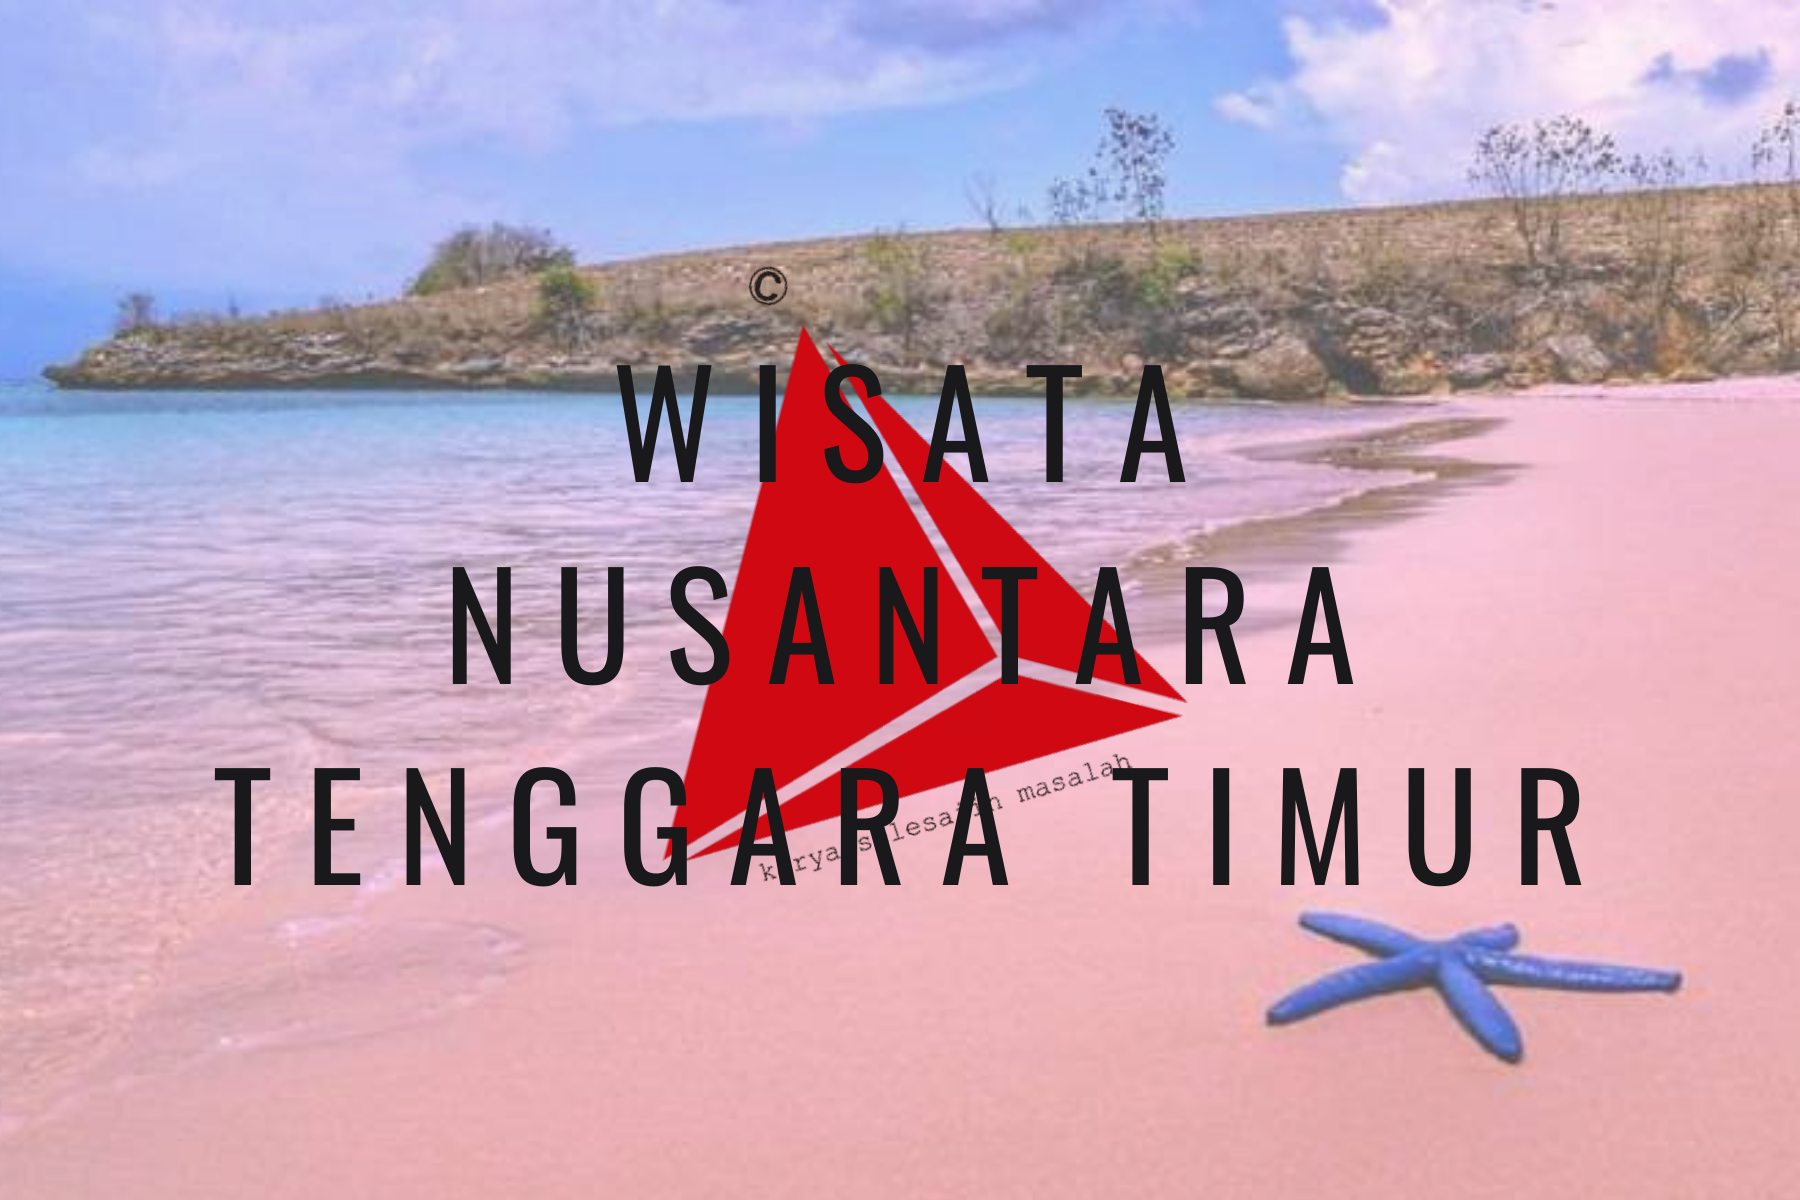 Wisata Nusa Tenggara Timur